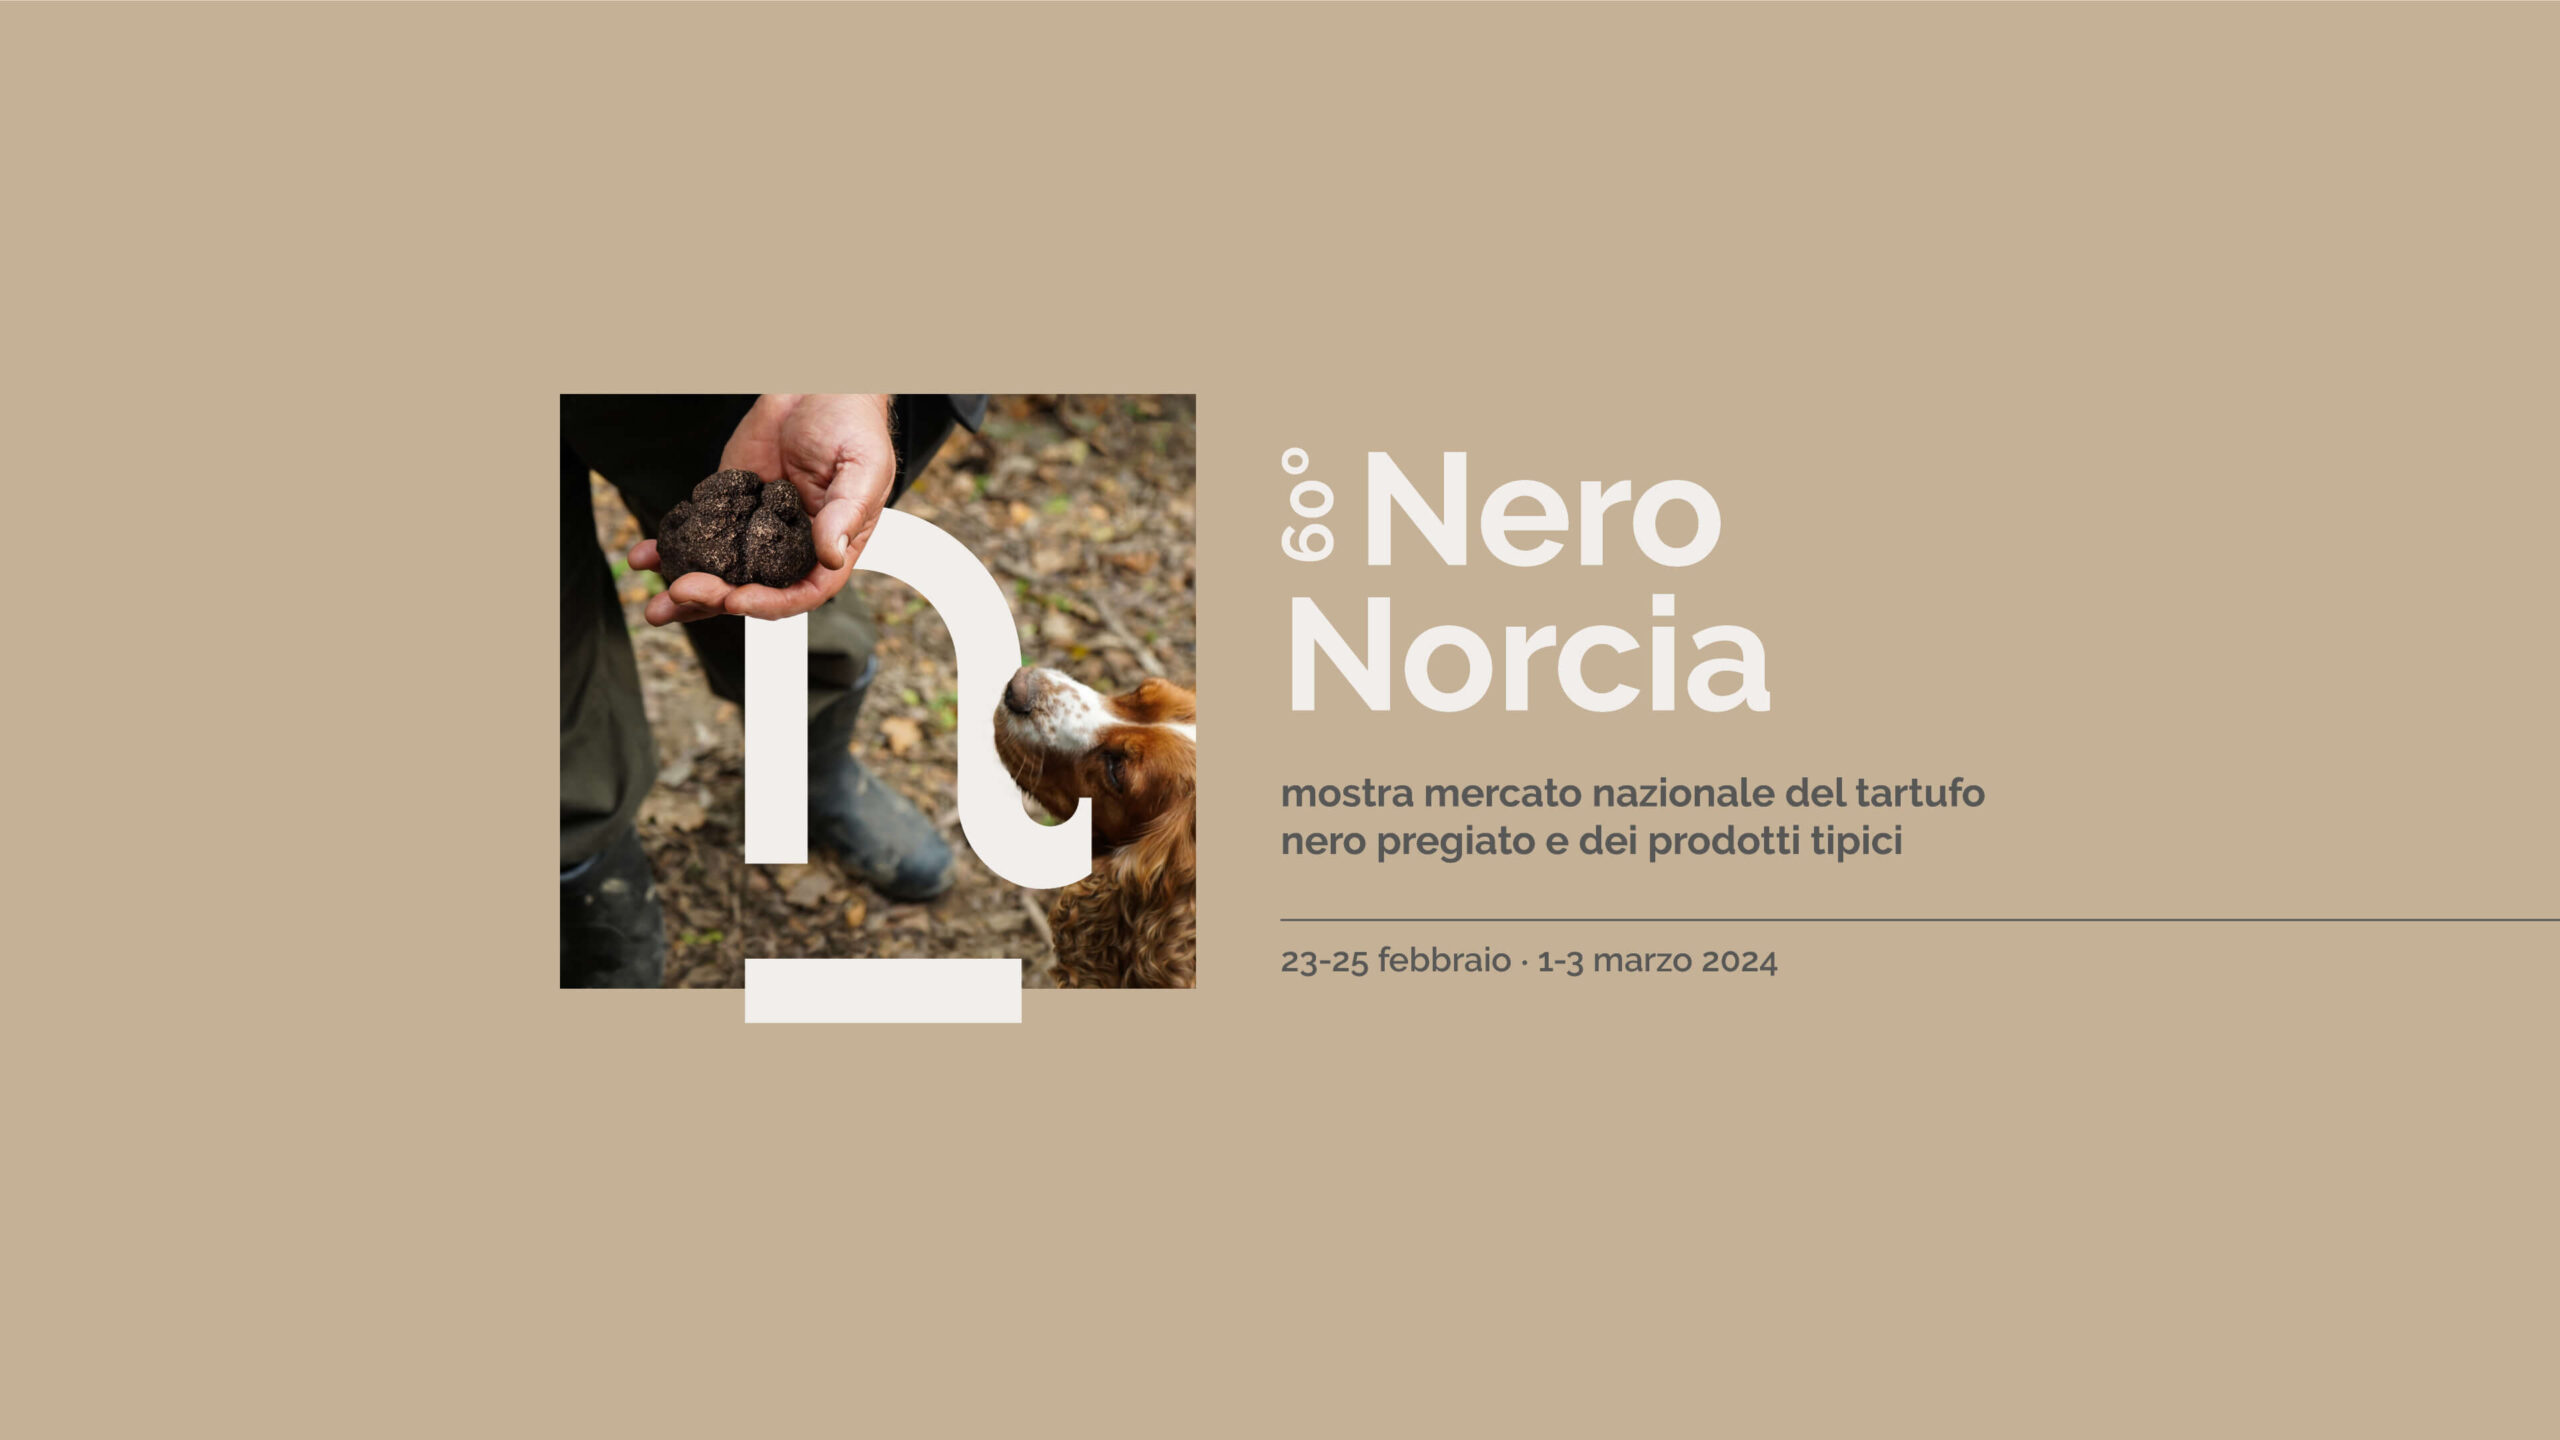 (c) Nero-norcia.it